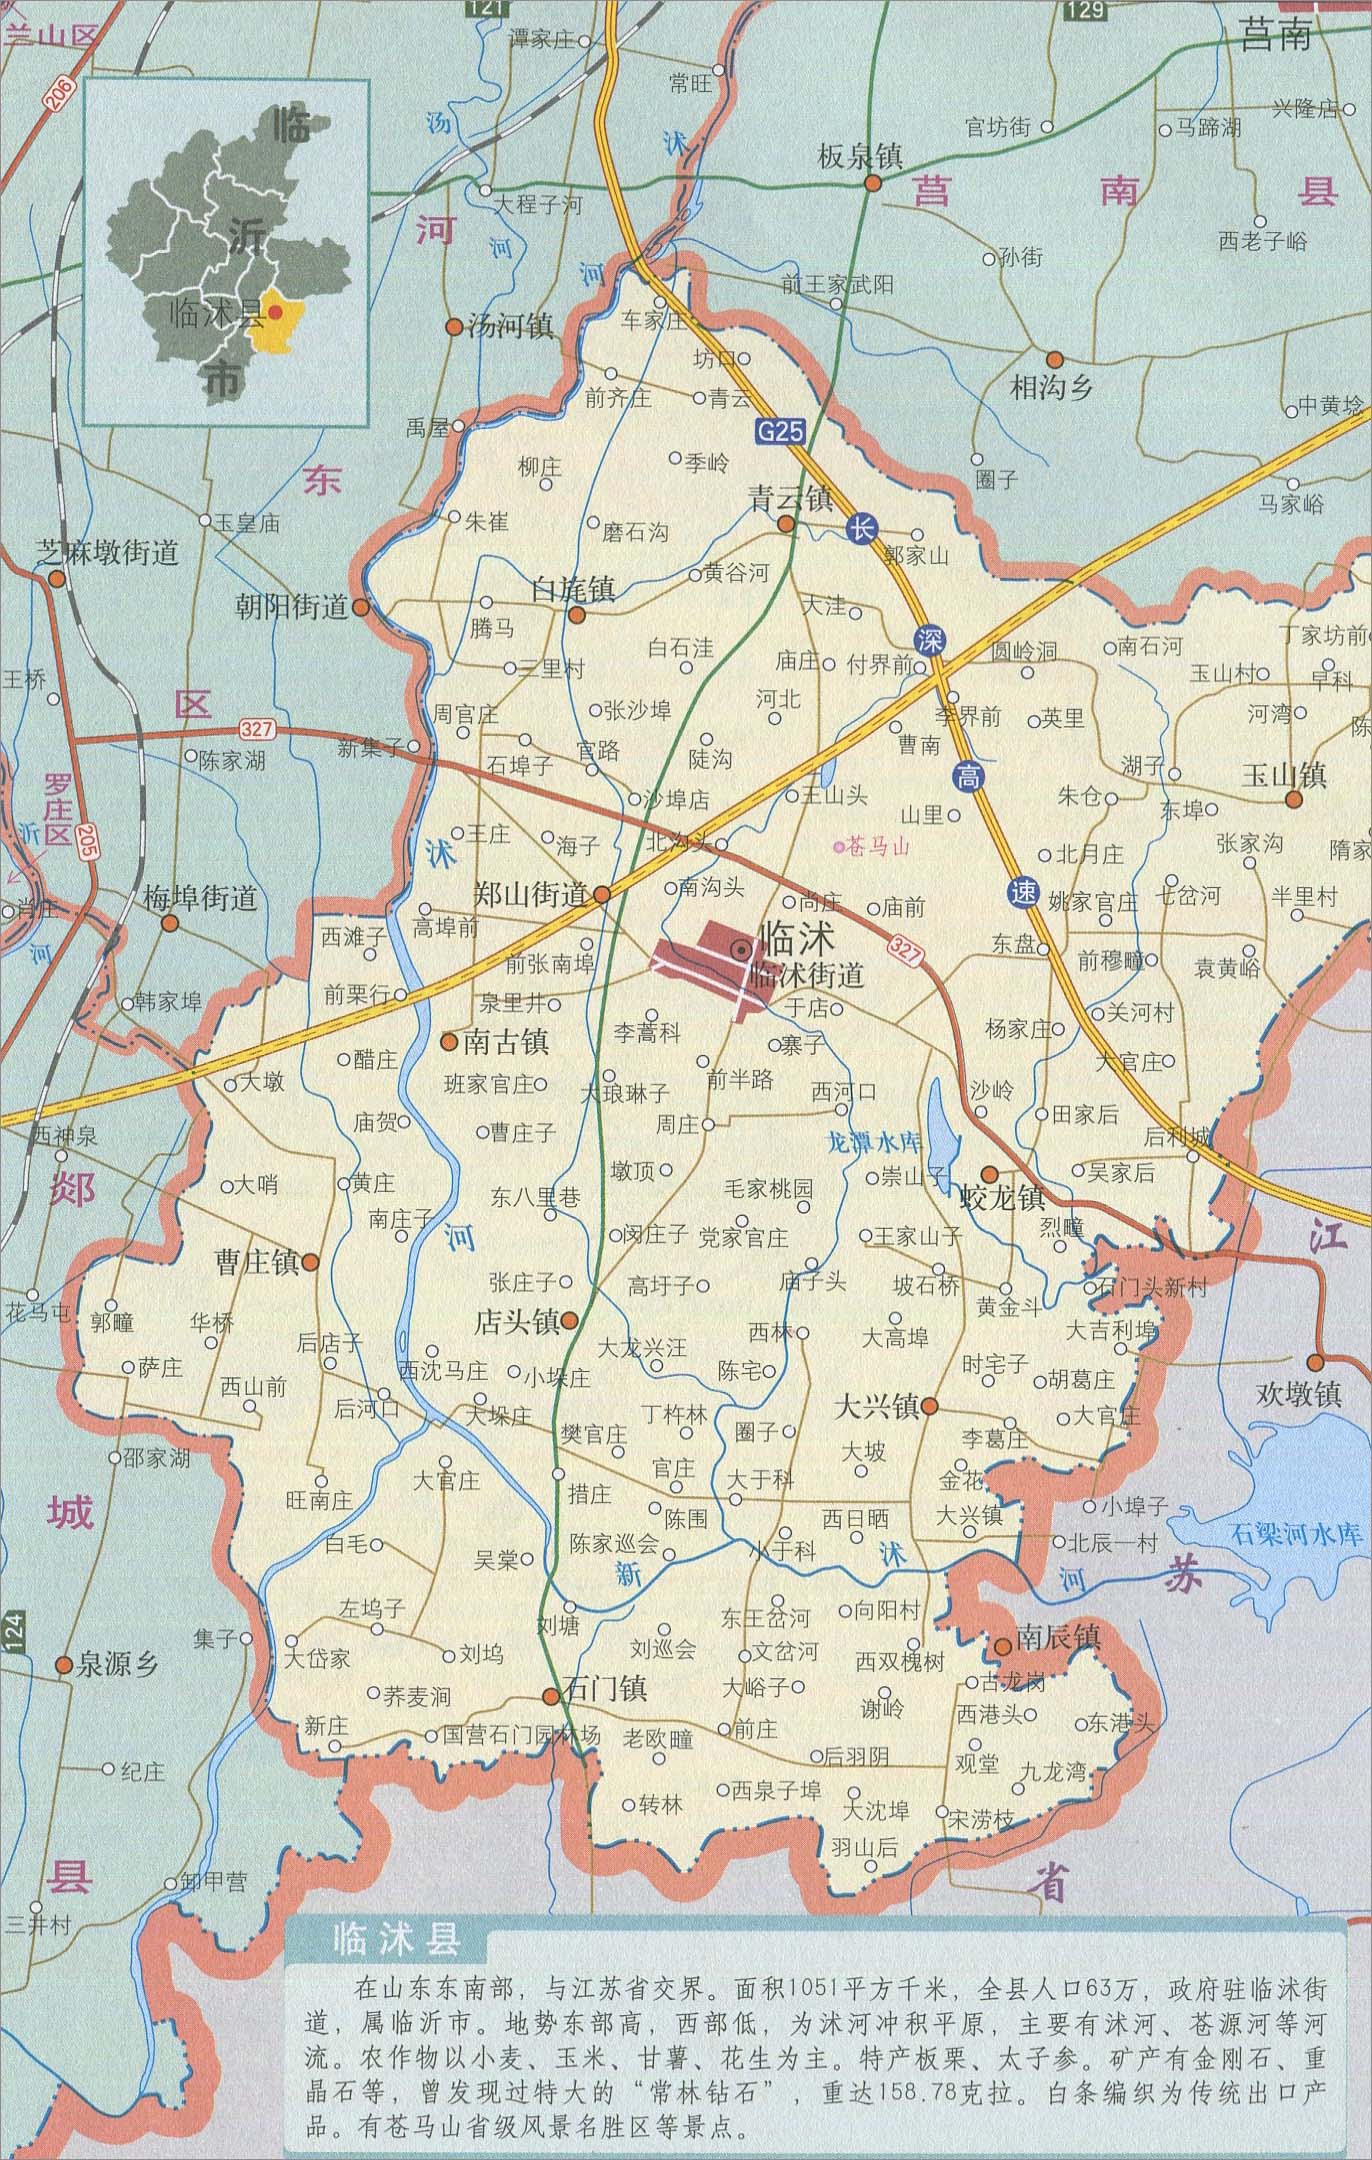 菏泽市 上一幅地图: 兰山区地图_河东区地图_罗庄区地图 | 临沂市